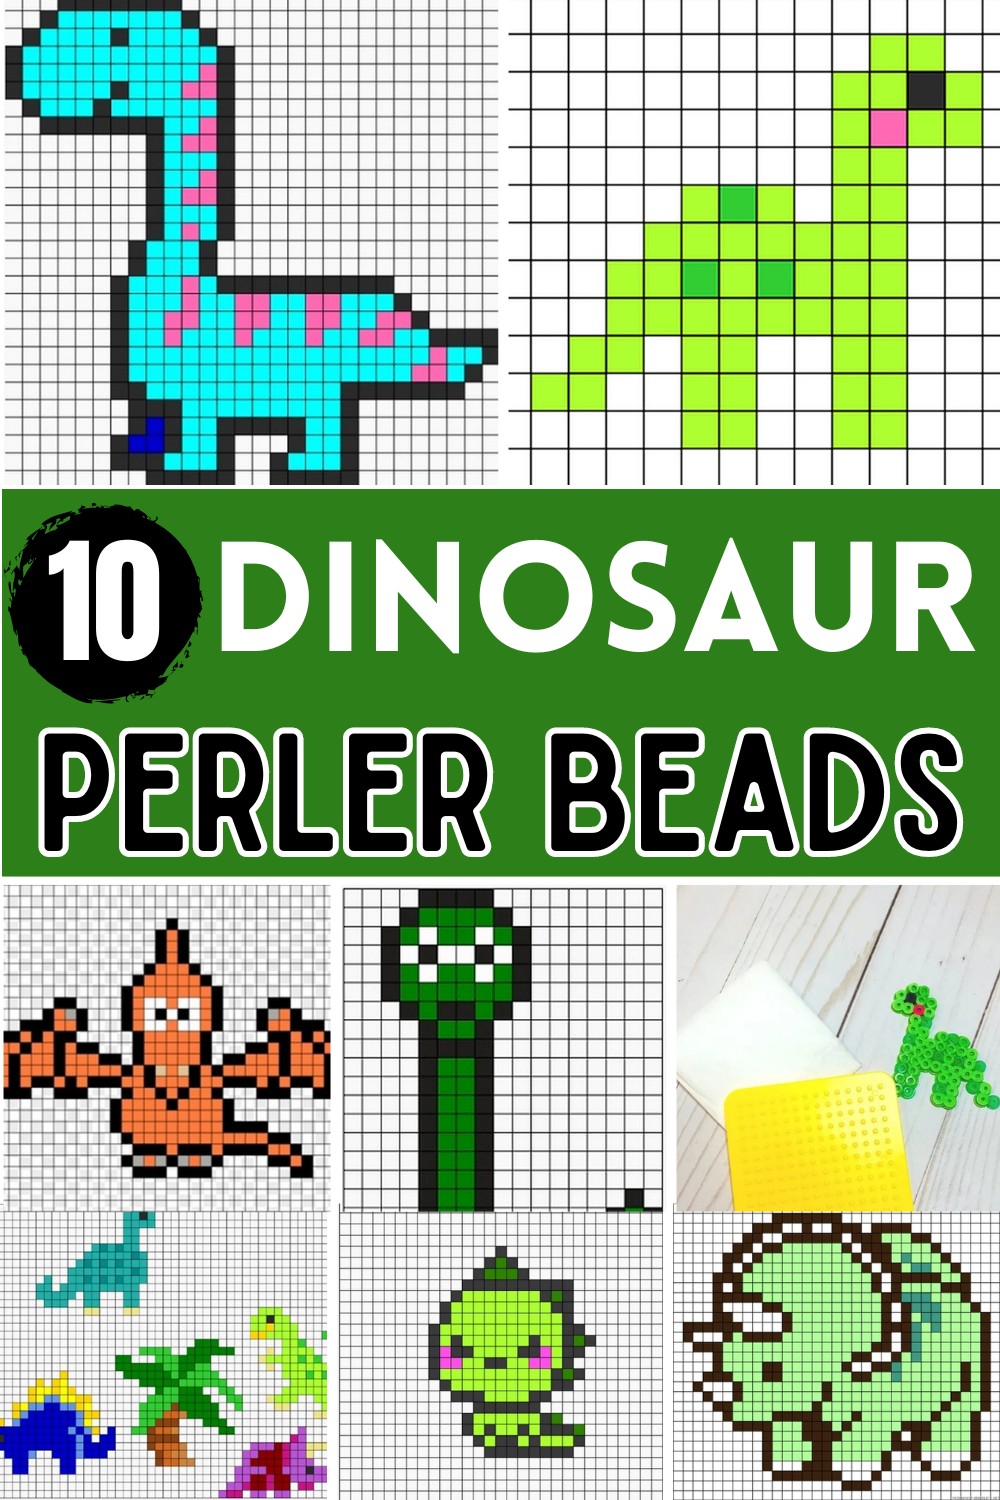 Dinosaur Perler Bead Patterns